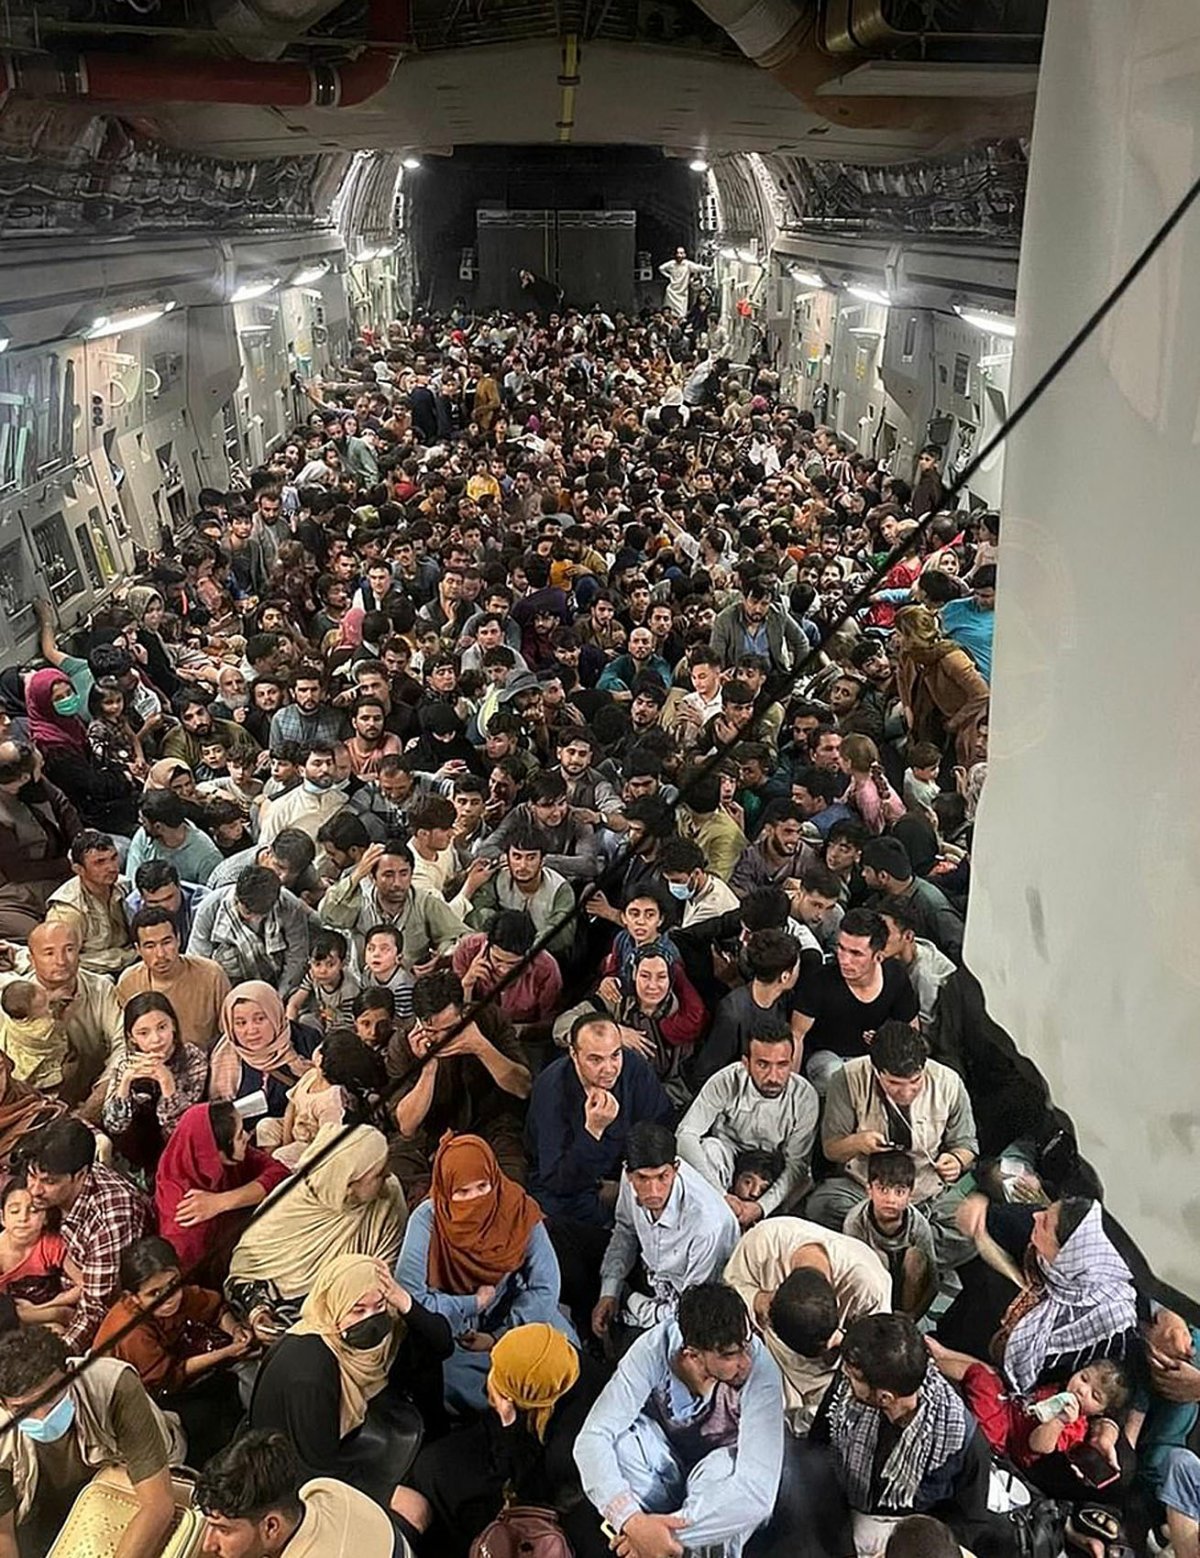 2021년 8월15일 아프간 수도 카불에서 카타르로 향하는 미군 C-17 수송기에 수백 명이 빽빽하게 들어차 있다. 이 비행기의 탑승 정원은 200명이지만 탈레반이 장악한 아프간을 탈출하려는 사람이 몰리면서 3배가 넘는 640명이 탔었다. 트위터